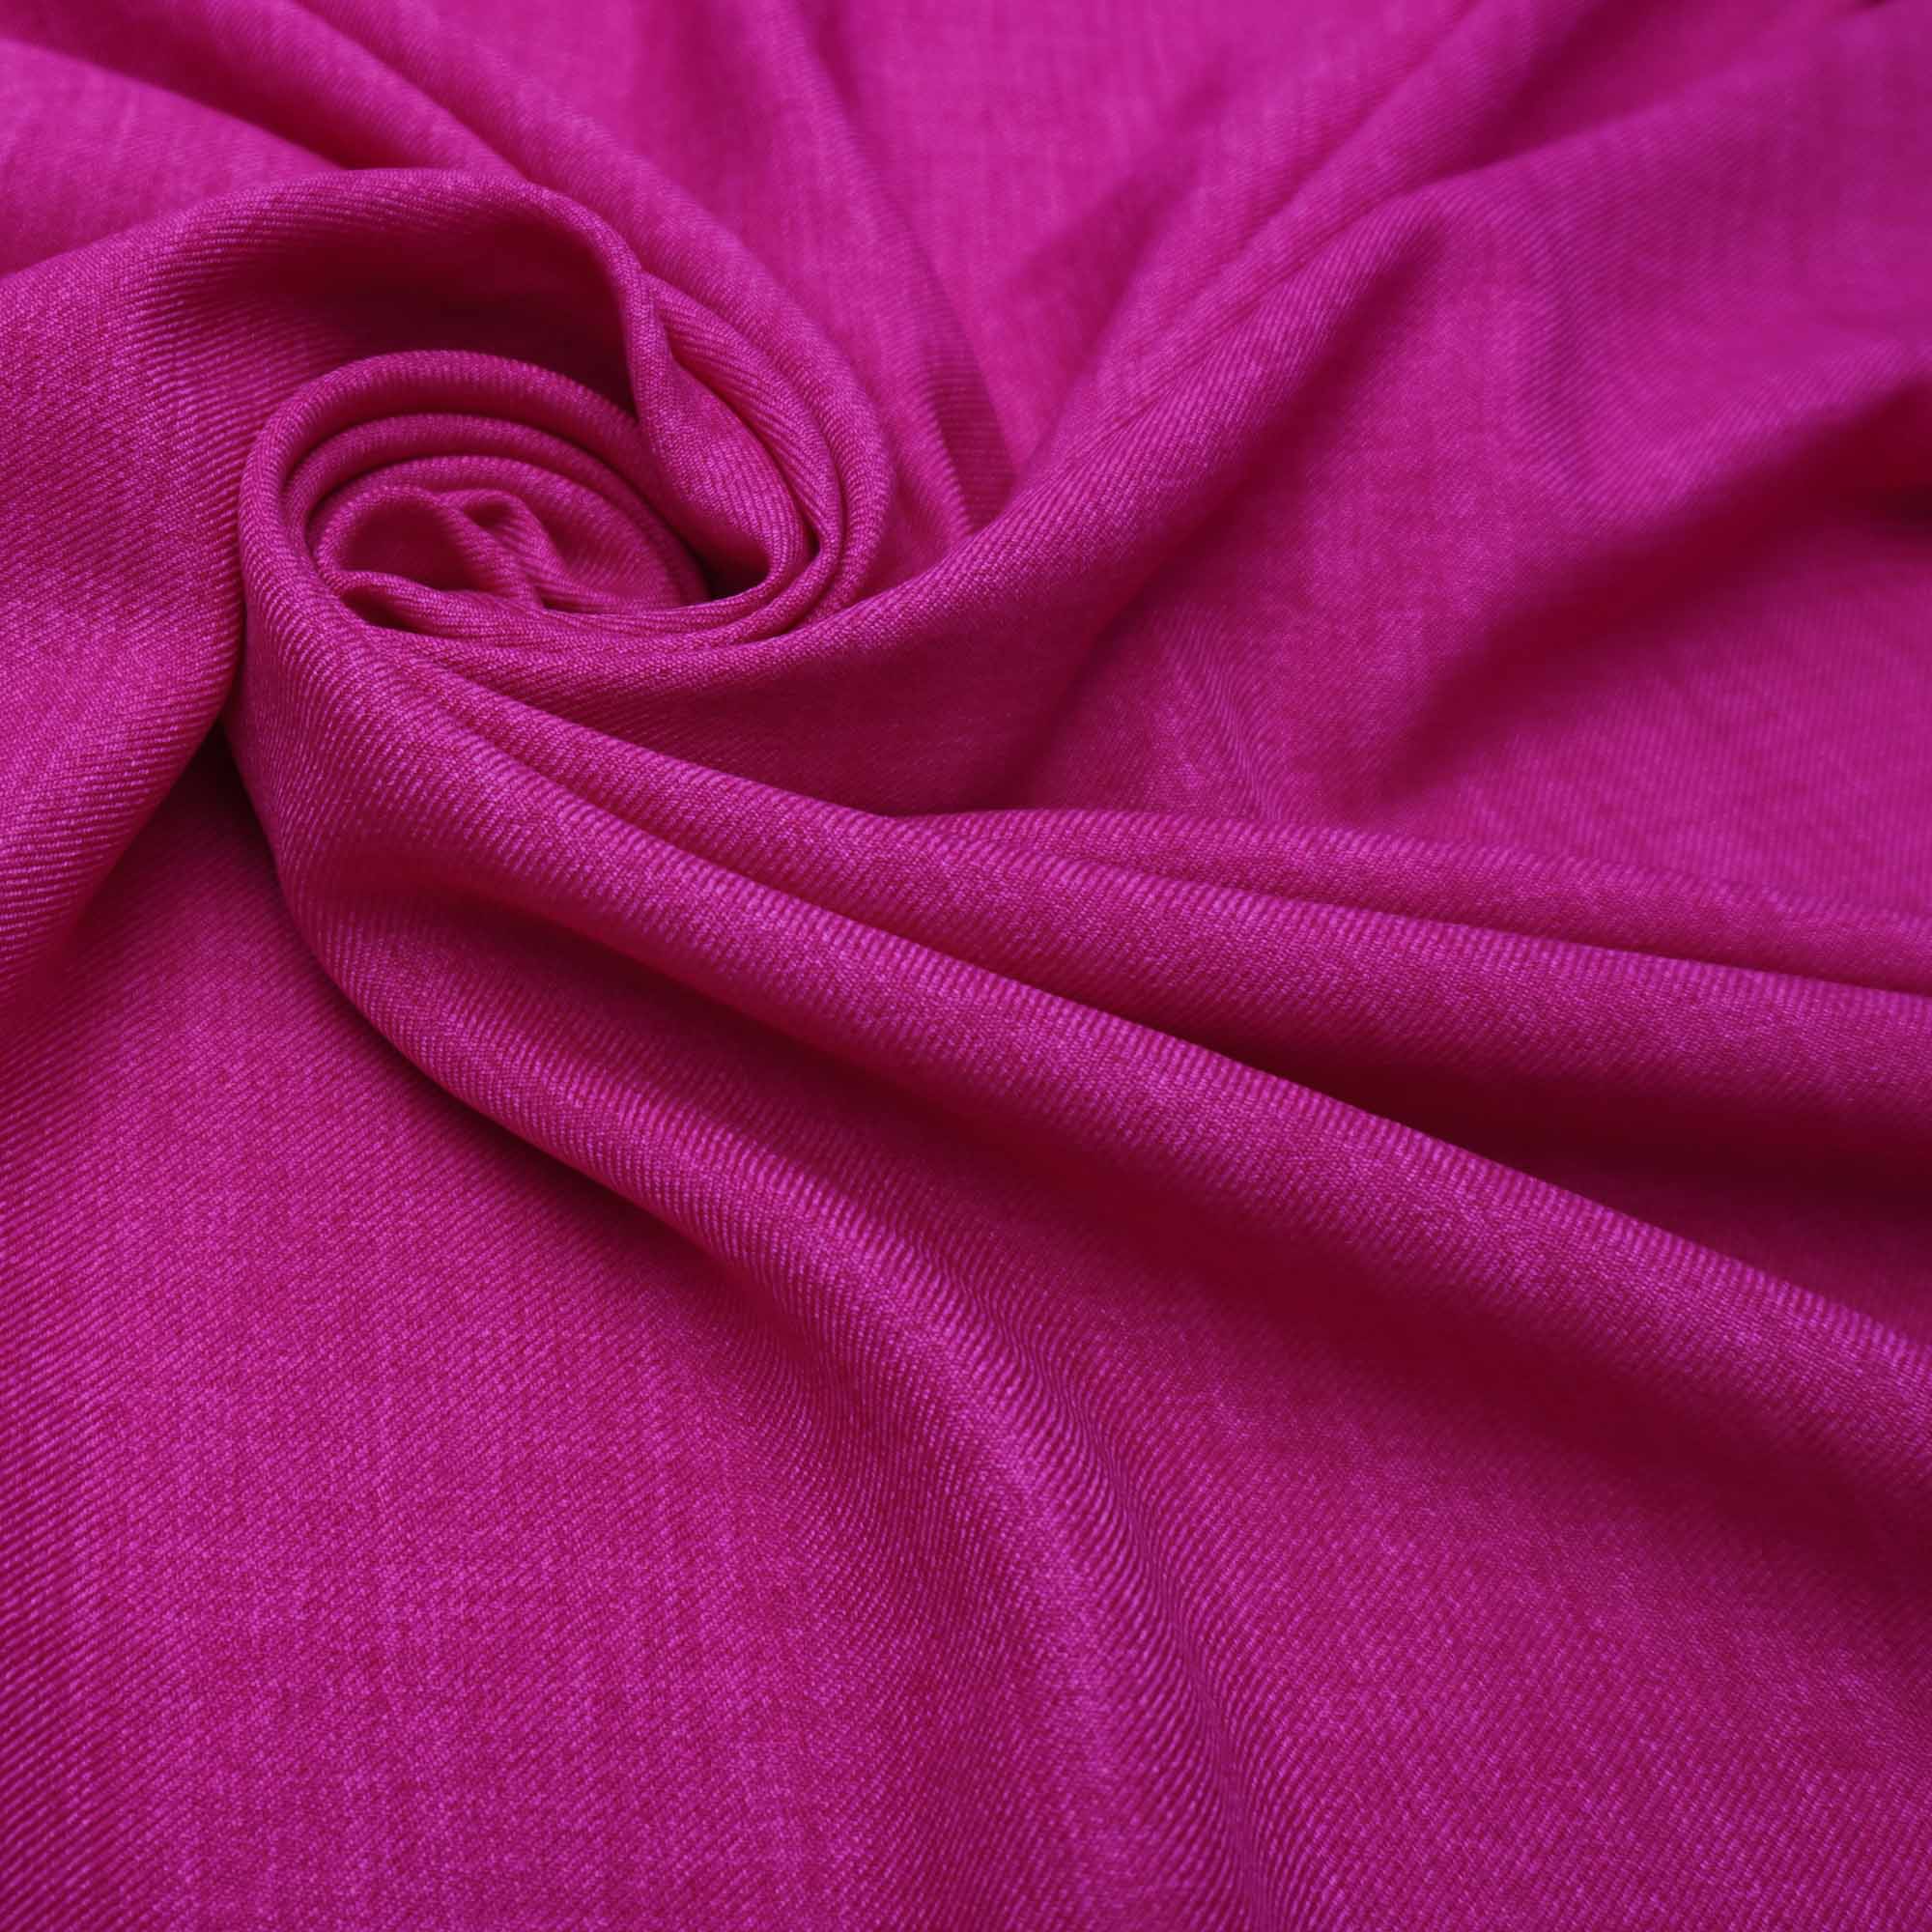 Tecido alfaiataria com textura de linho pink